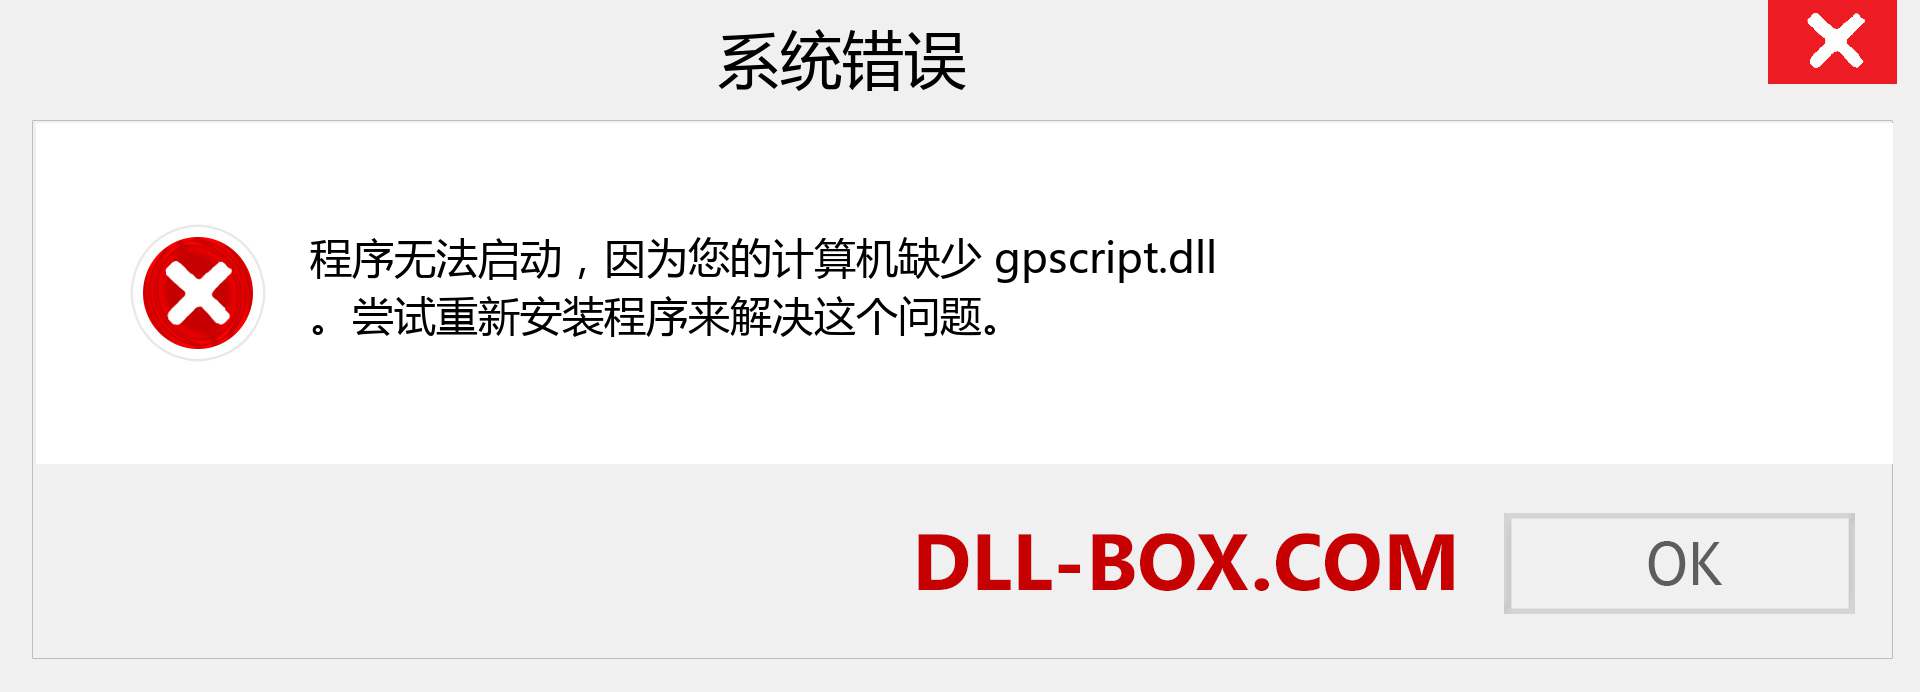 gpscript.dll 文件丢失？。 适用于 Windows 7、8、10 的下载 - 修复 Windows、照片、图像上的 gpscript dll 丢失错误